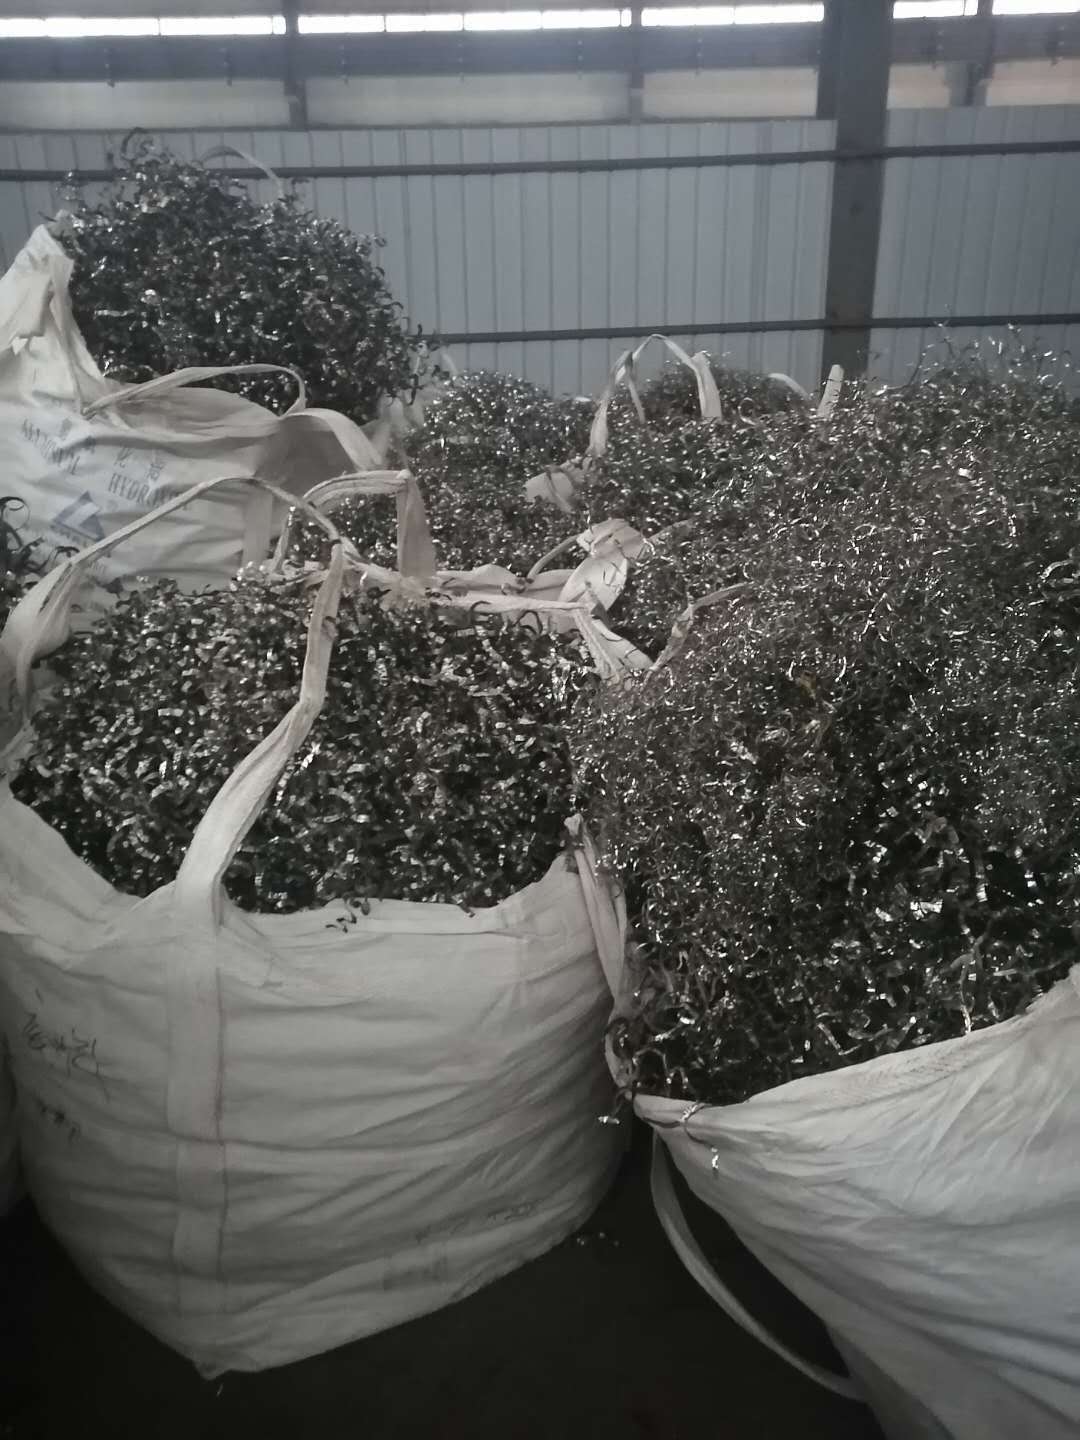 广州回收钛多少钱一斤